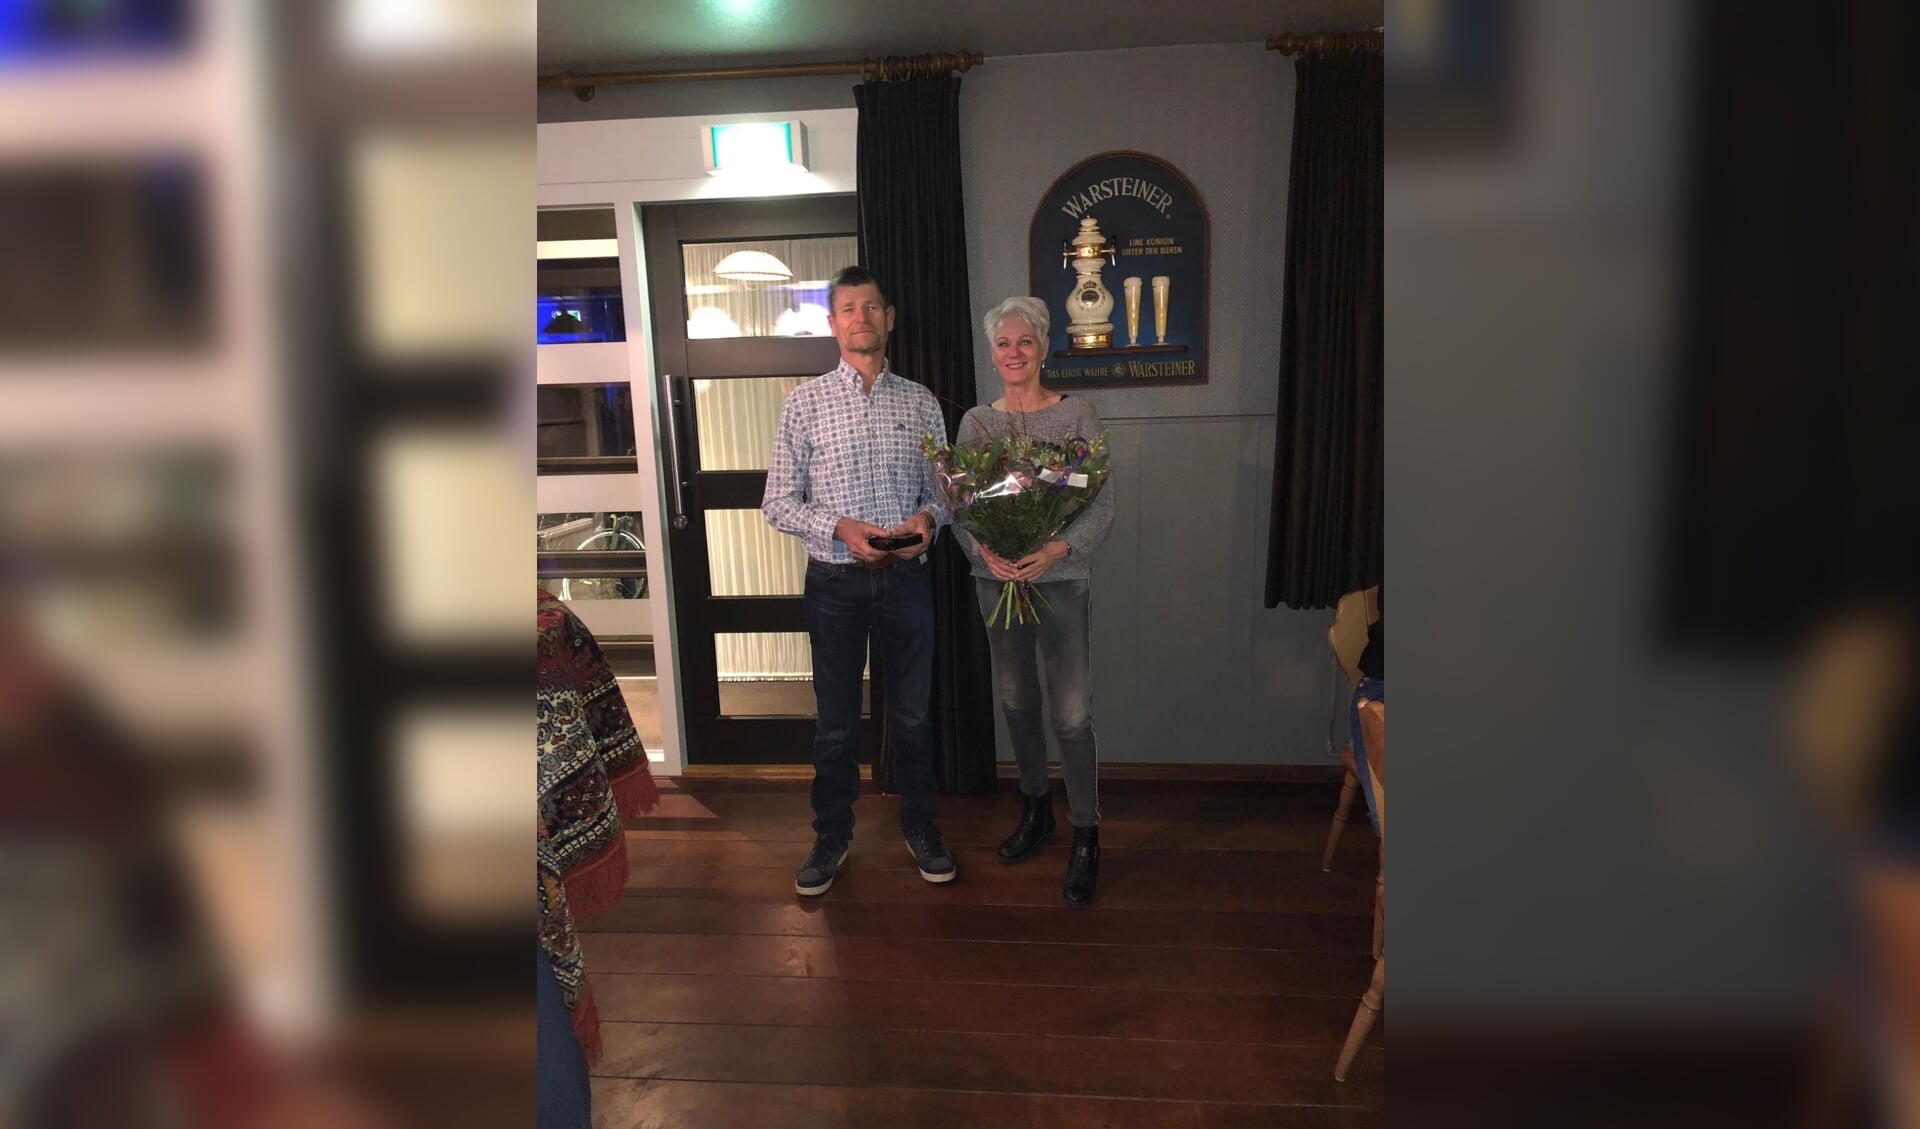 Leden van de Schanskloppers kozen voor Broddy Krabbenborg als winnaar van 't Schanskloppertje. Zijn vrouw Nardie werd in de bloemetjes gezet. Foto: PR De Schanskloppers